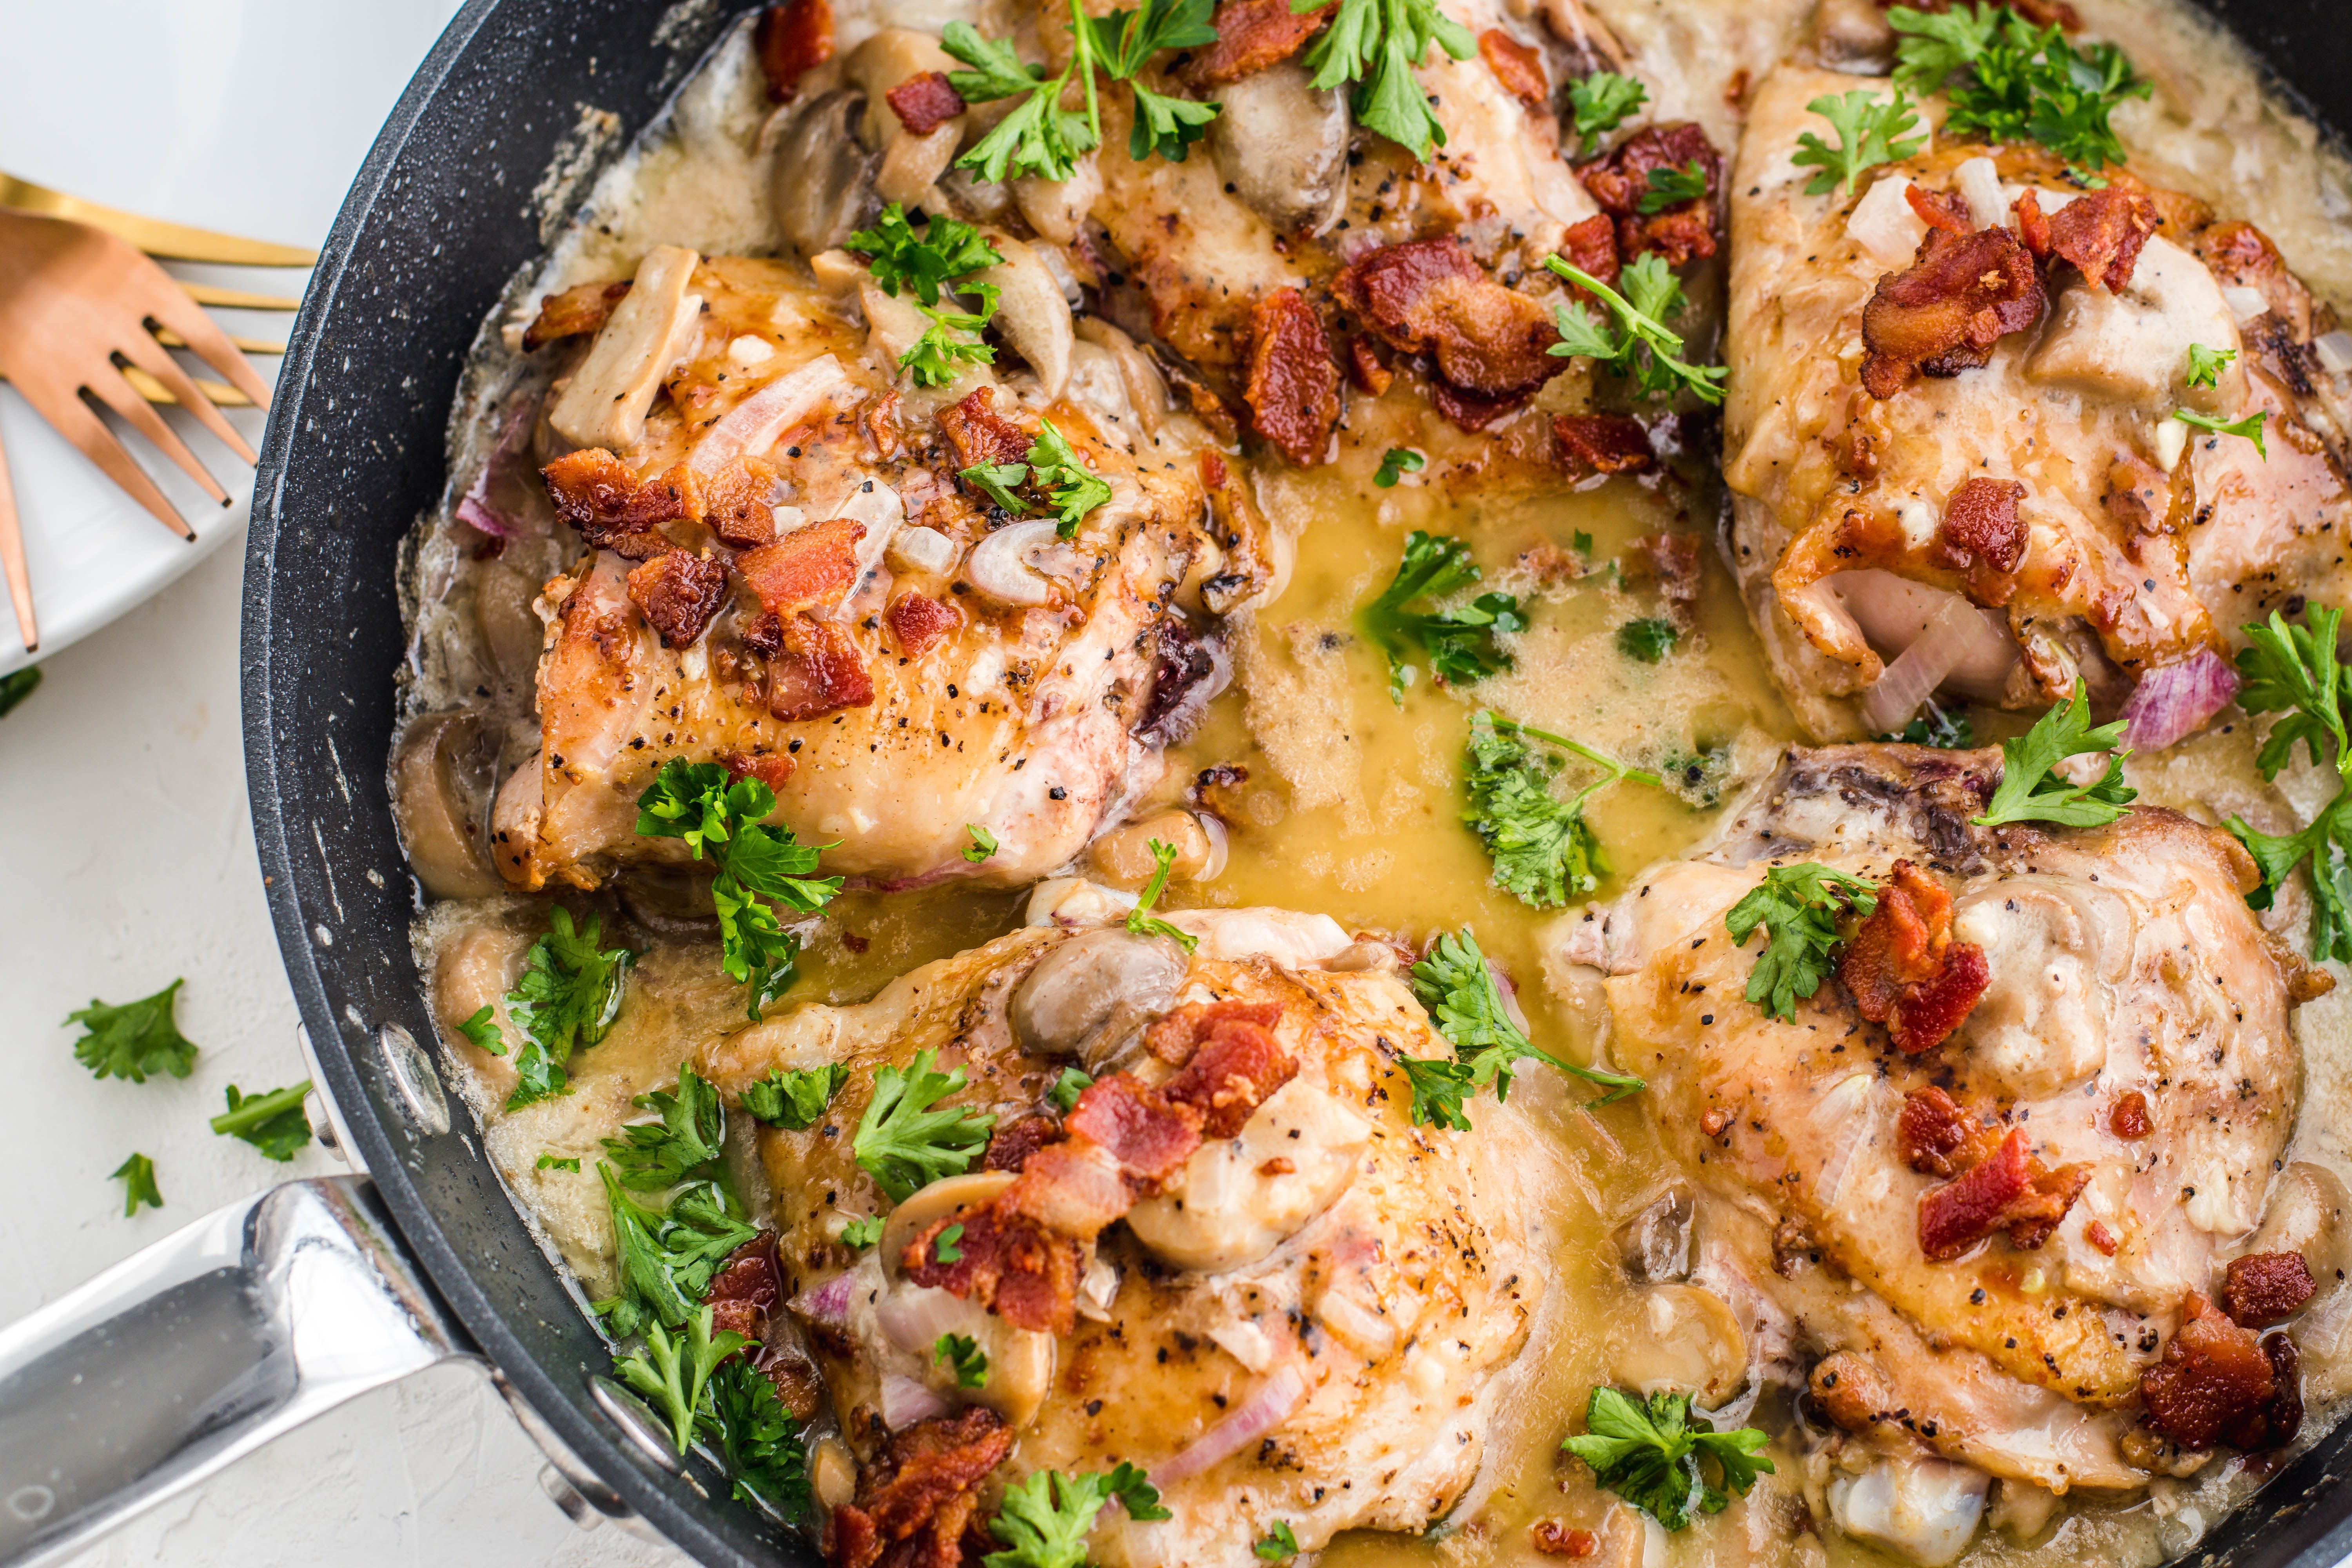 Курица в соевом соусе: как приготовить в духовке и на плите - 5 фото-рецептов